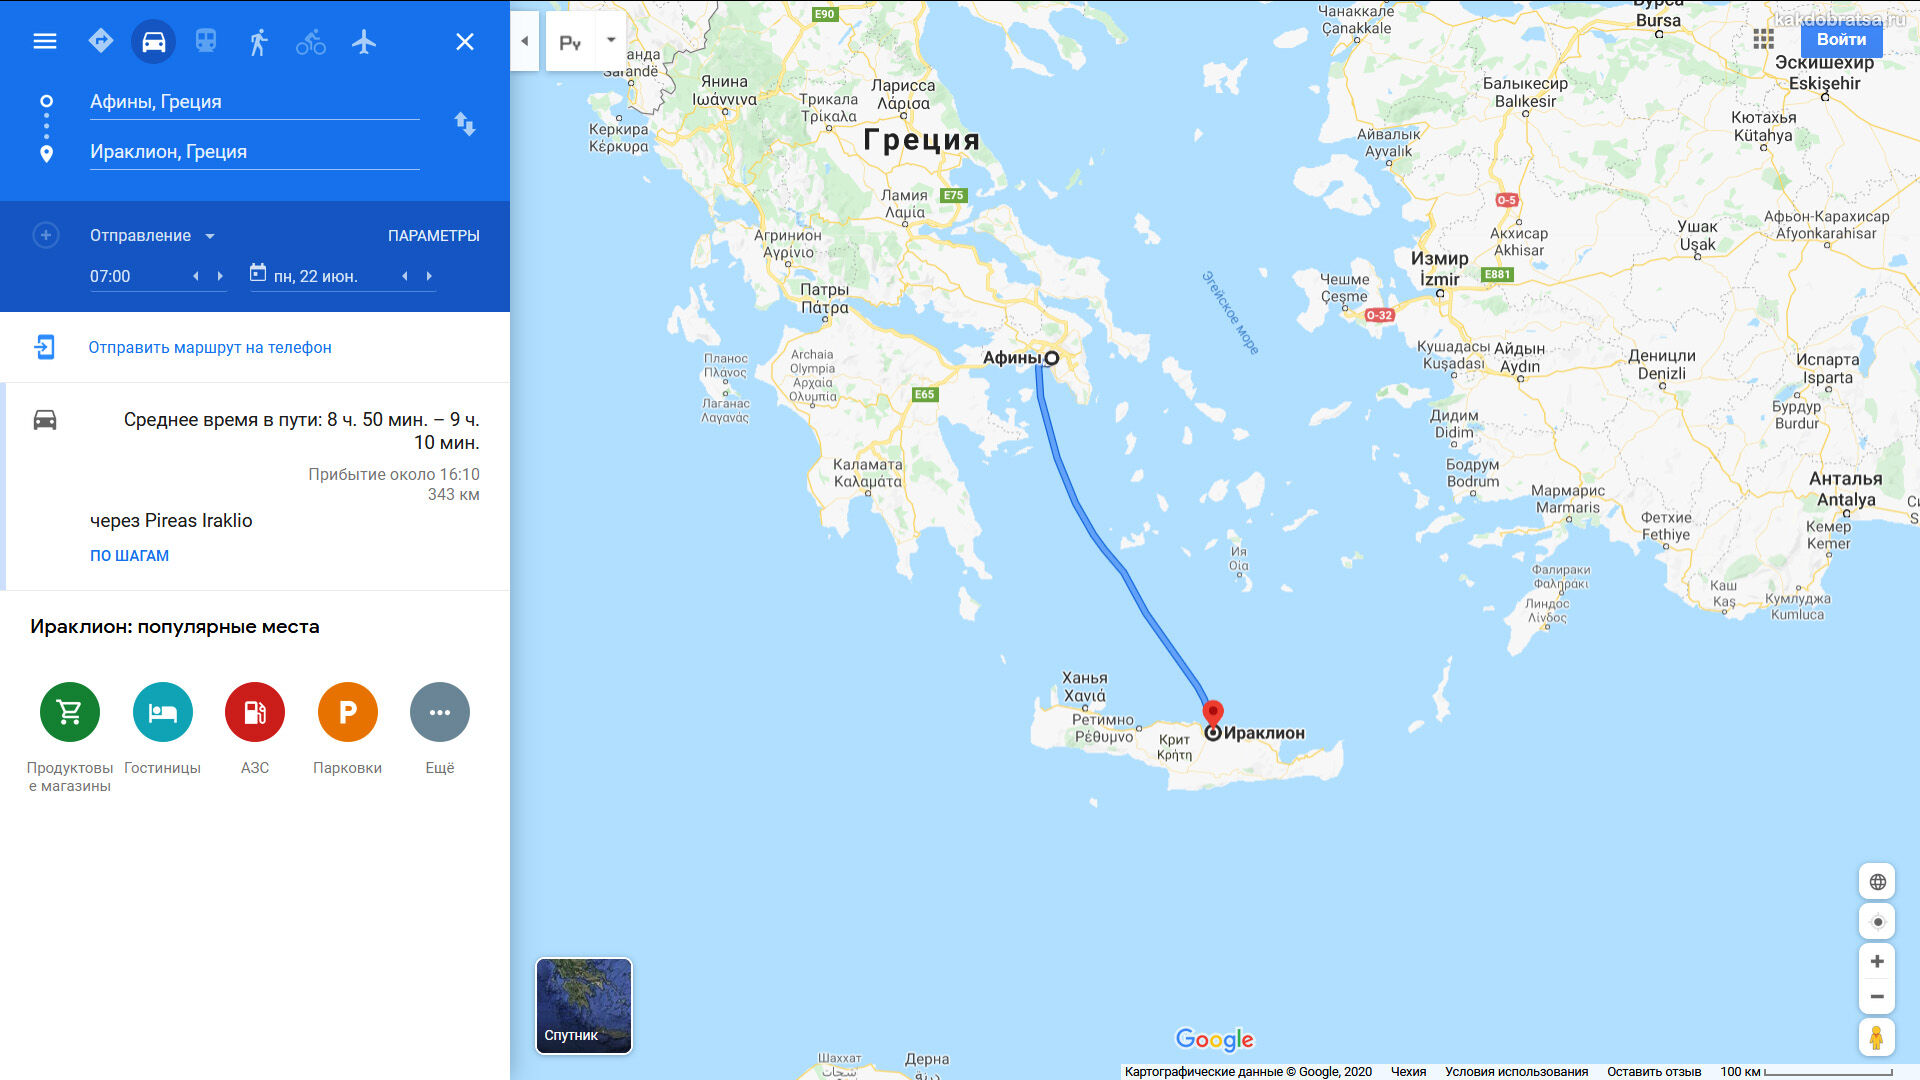 Афины Крит время в пути, карта и расстояние